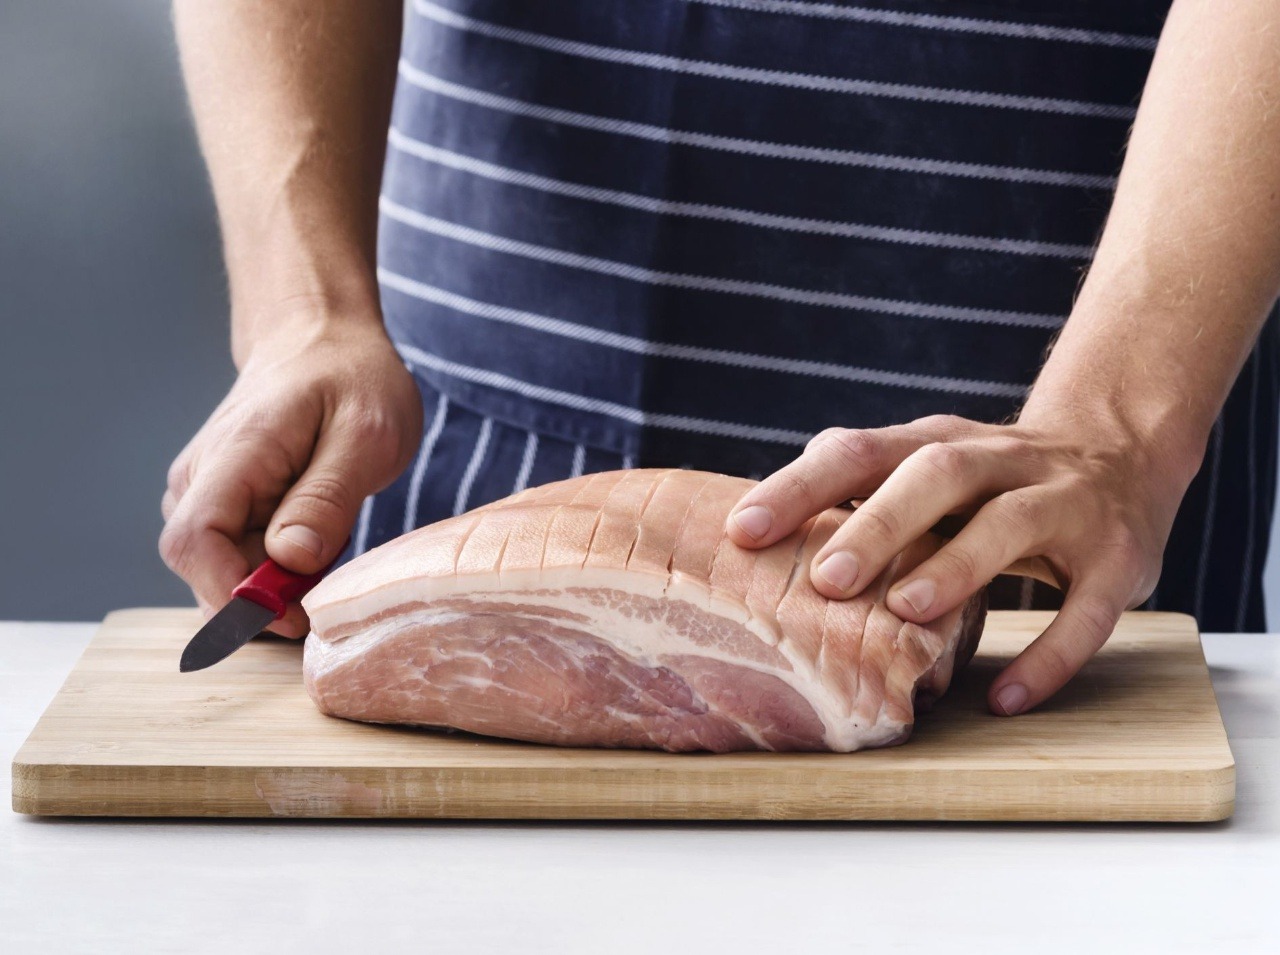 Dosku a nôž, ktorým ste krájali surové mäso, nikdy nepoužite na iné suroviny!